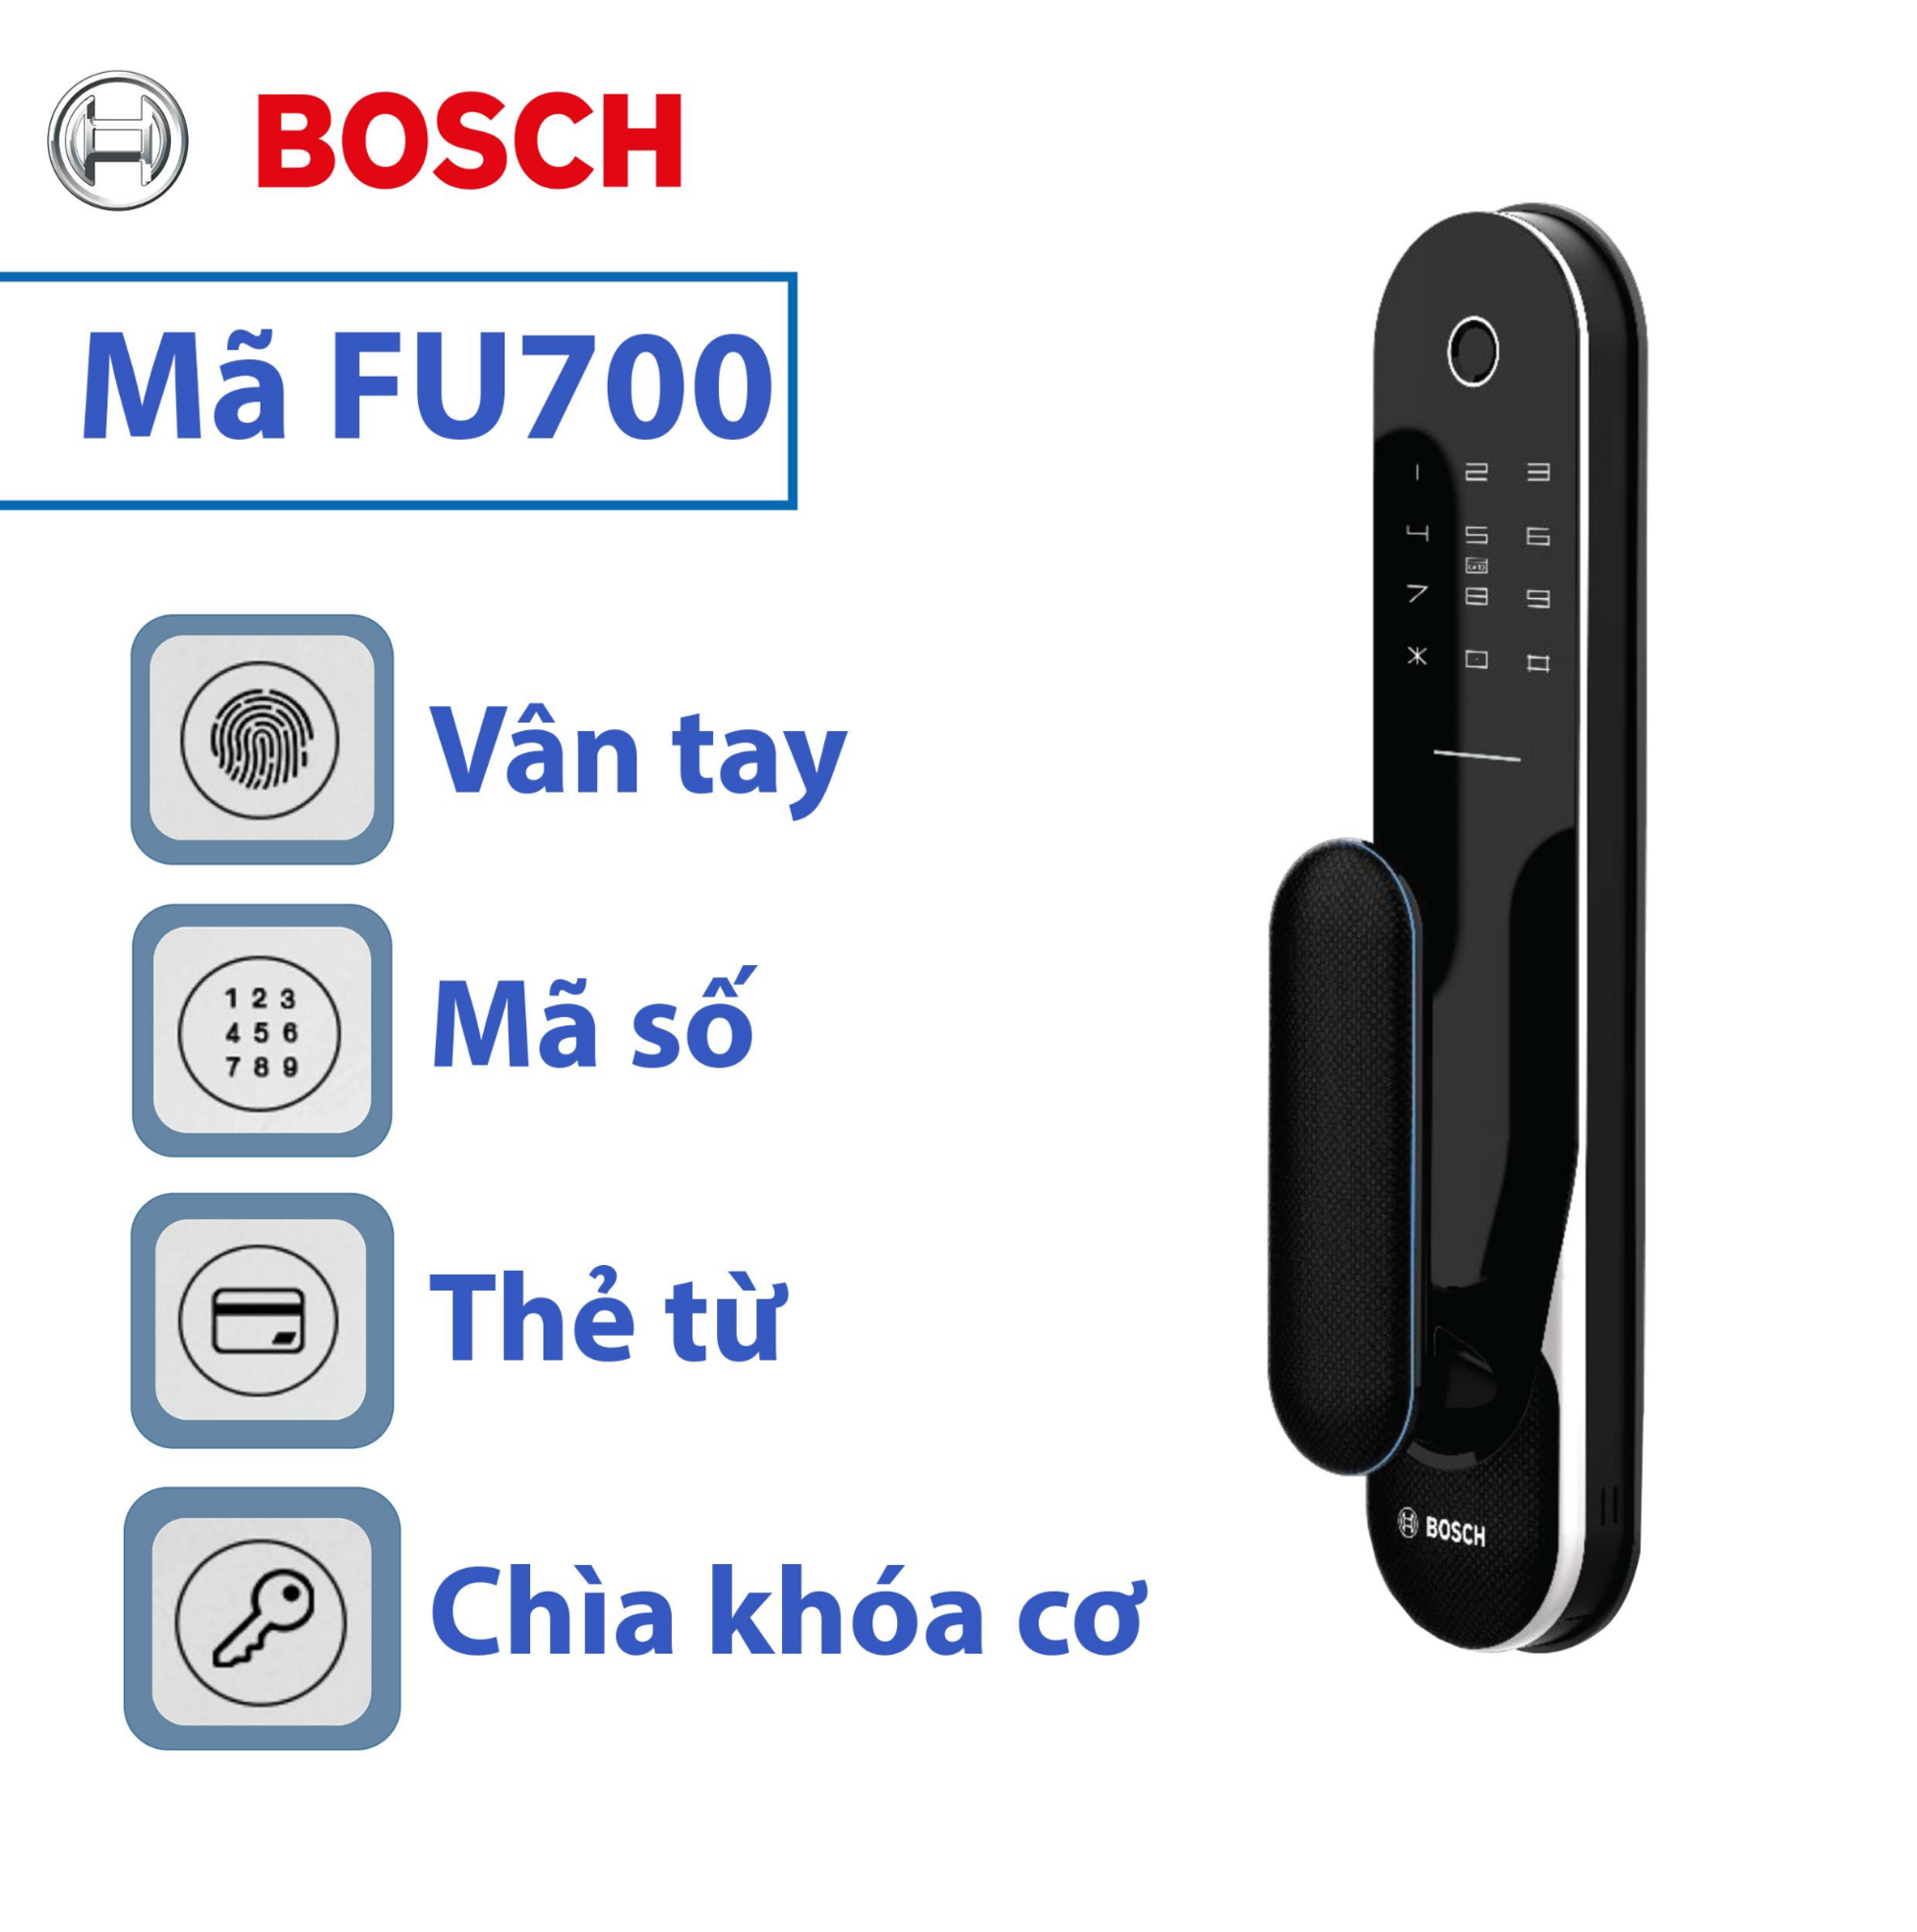  Bosch FU700 tích hợp nhiều chức năng mở cửa